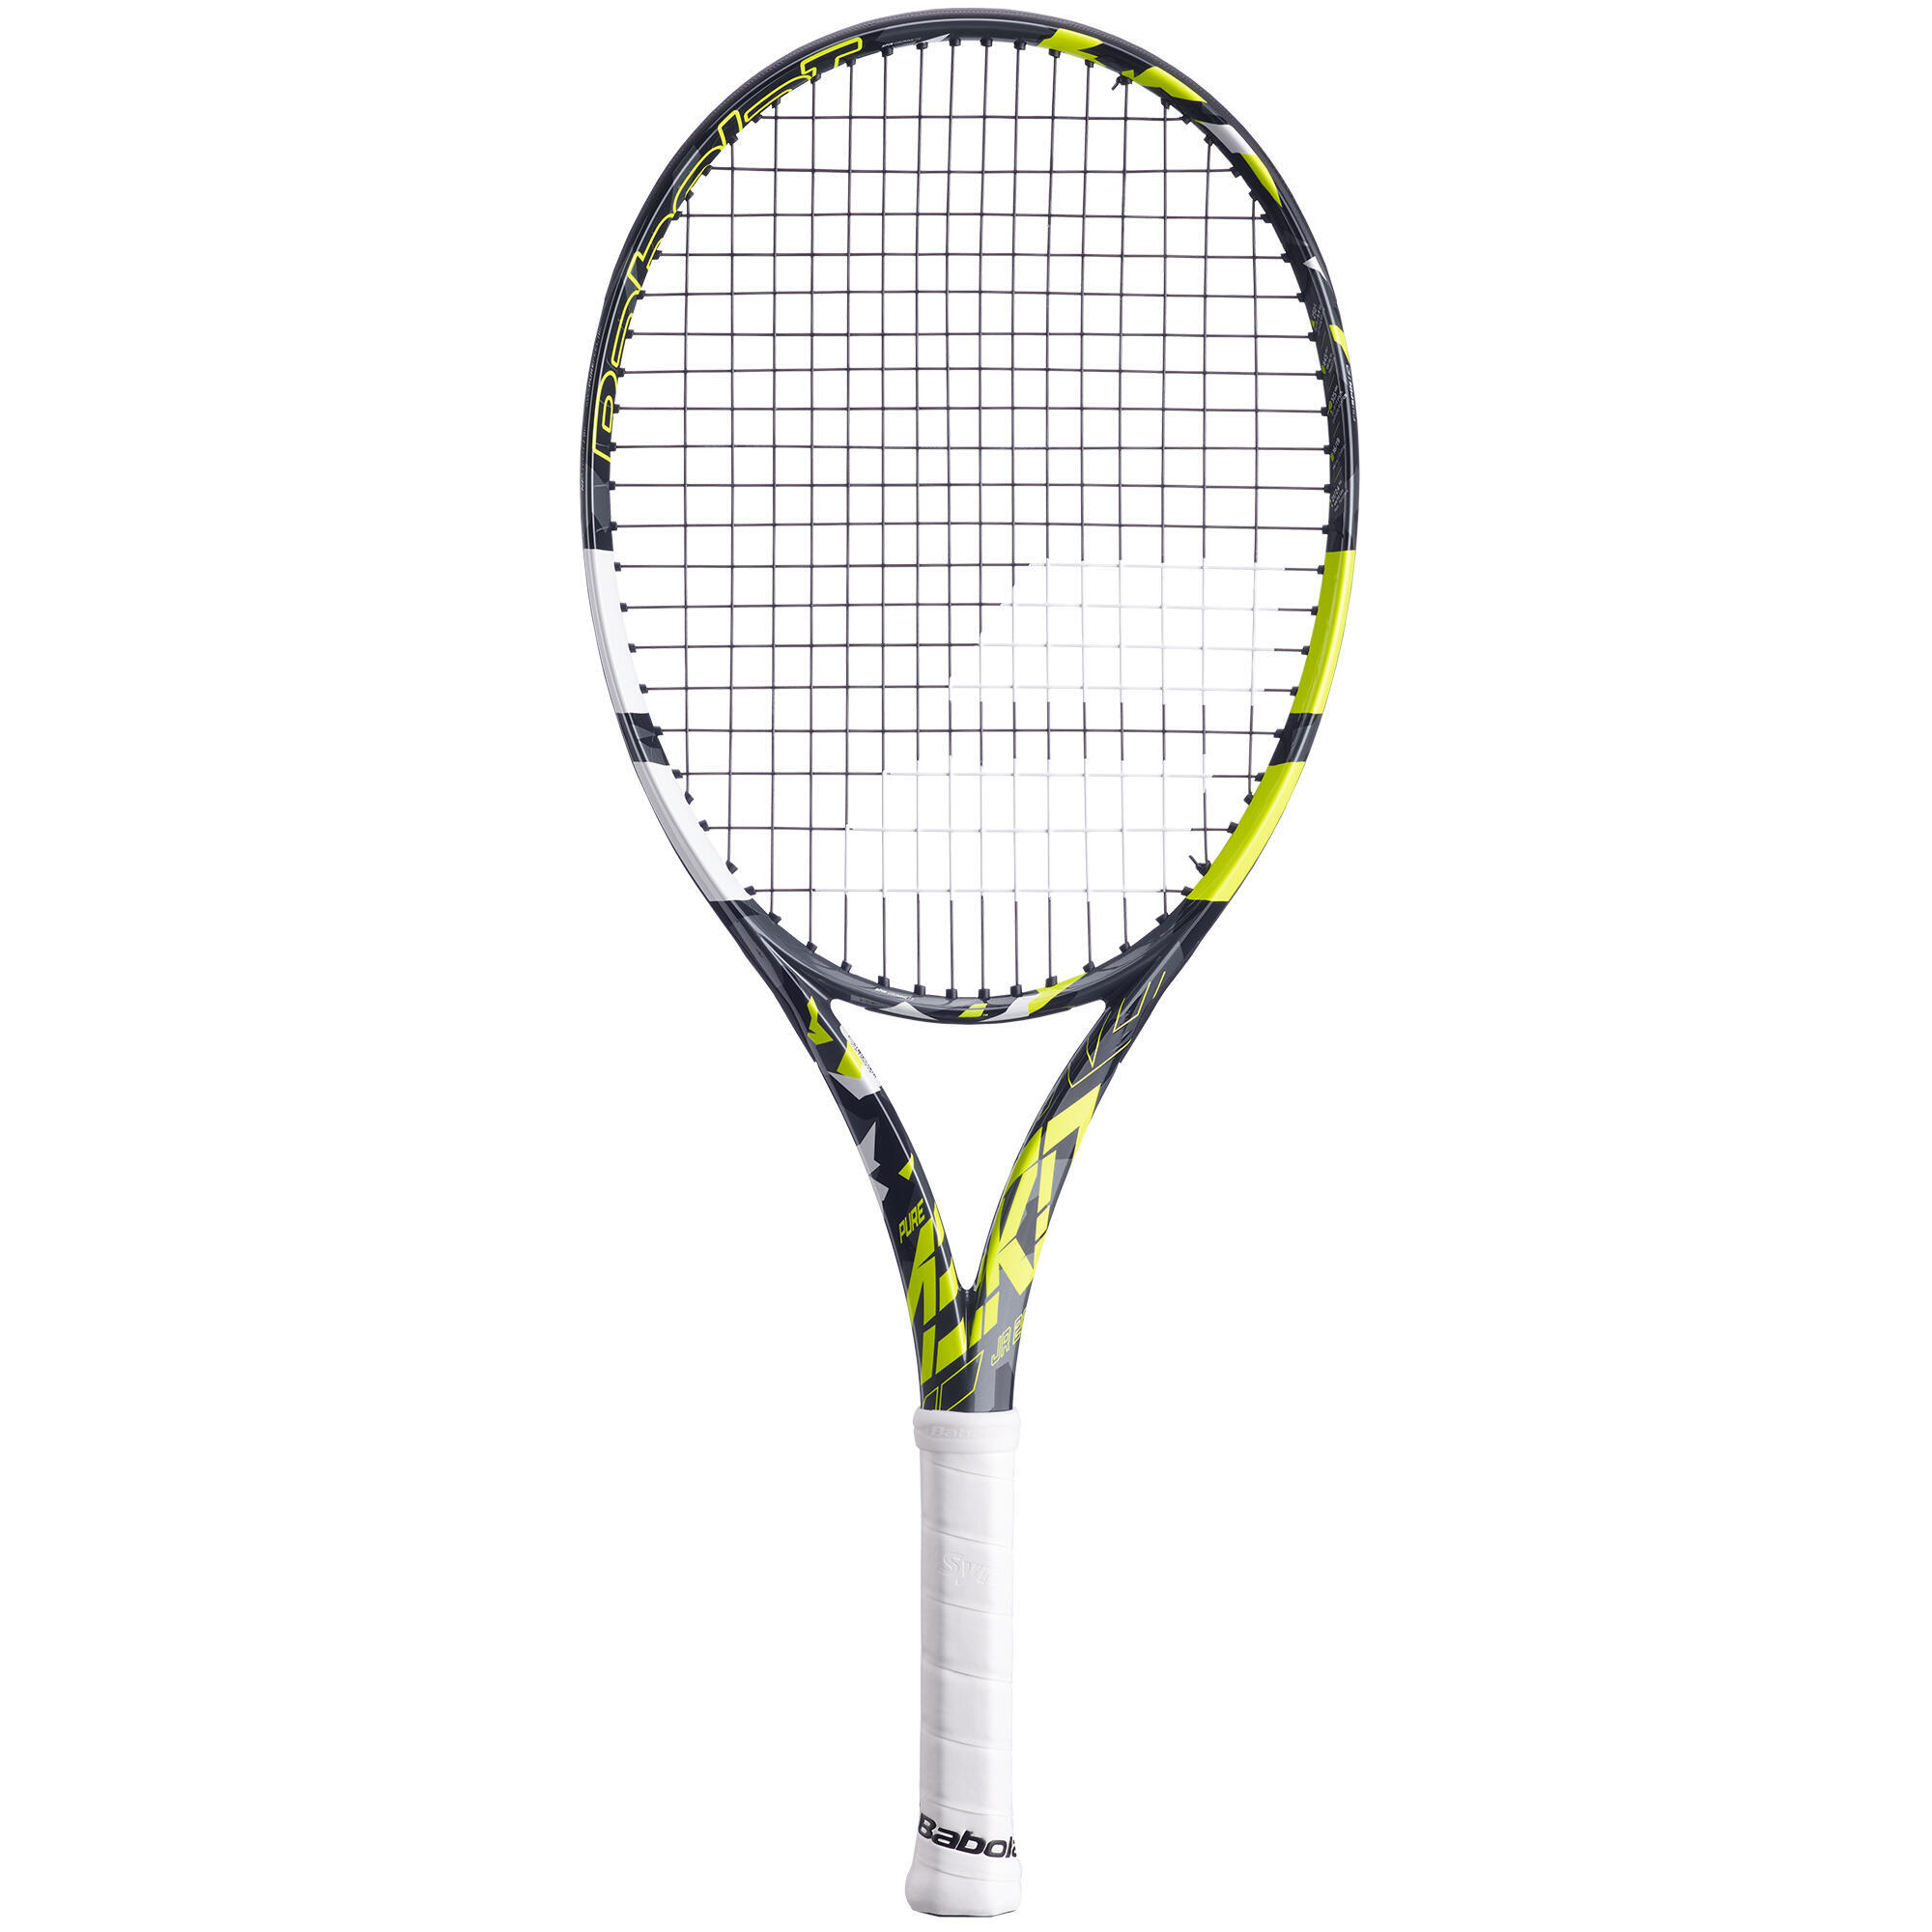 Детская теннисная ракетка Pure Aero 26 дюймов, черная/желтая BABOLAT серена 25 дюймов теннисная ракетка junior возраст 9 10 оранжевая